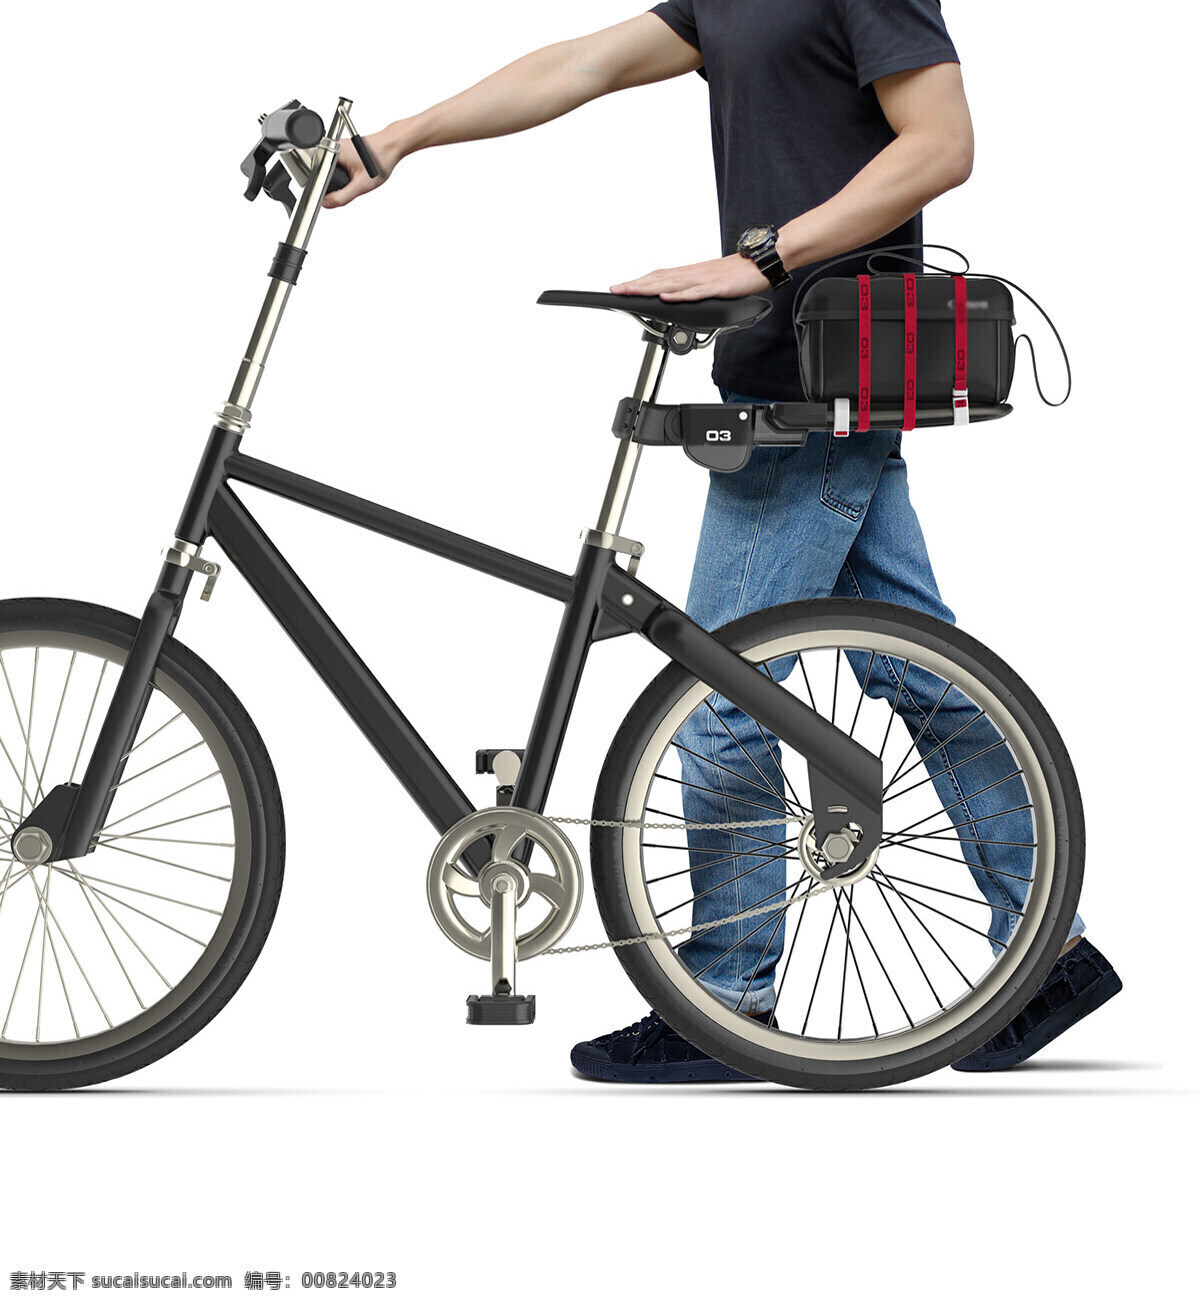 产品 单车 系列化 自行车 组装 模块化 配件 组装模块化